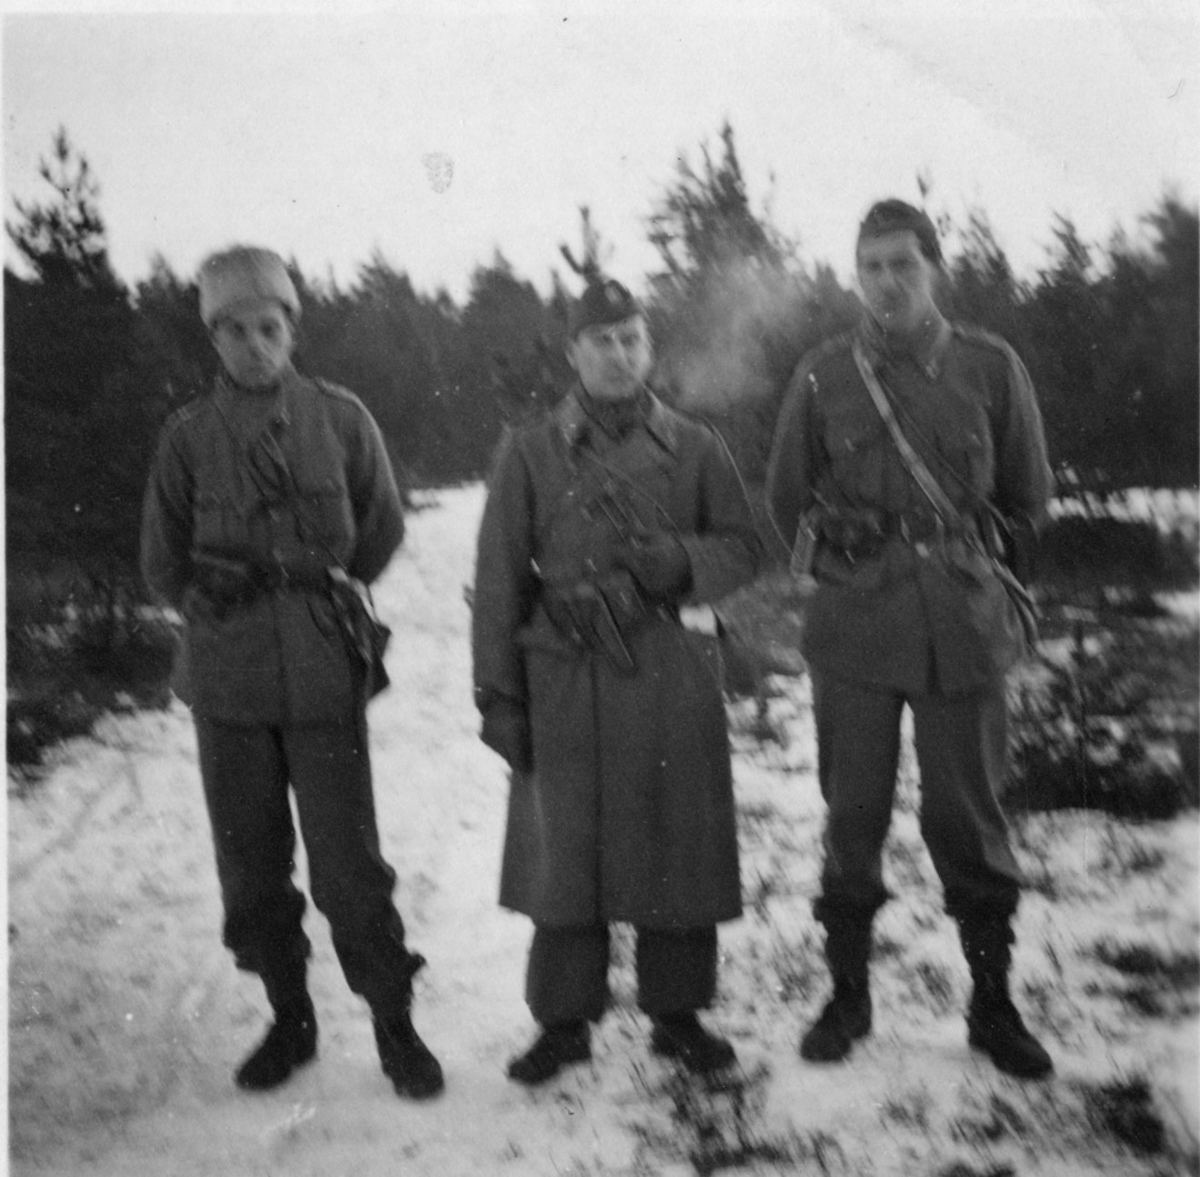 Dalamanövern. Furir "Spårvagnen", sergeant Gullberg, furir Hellman.